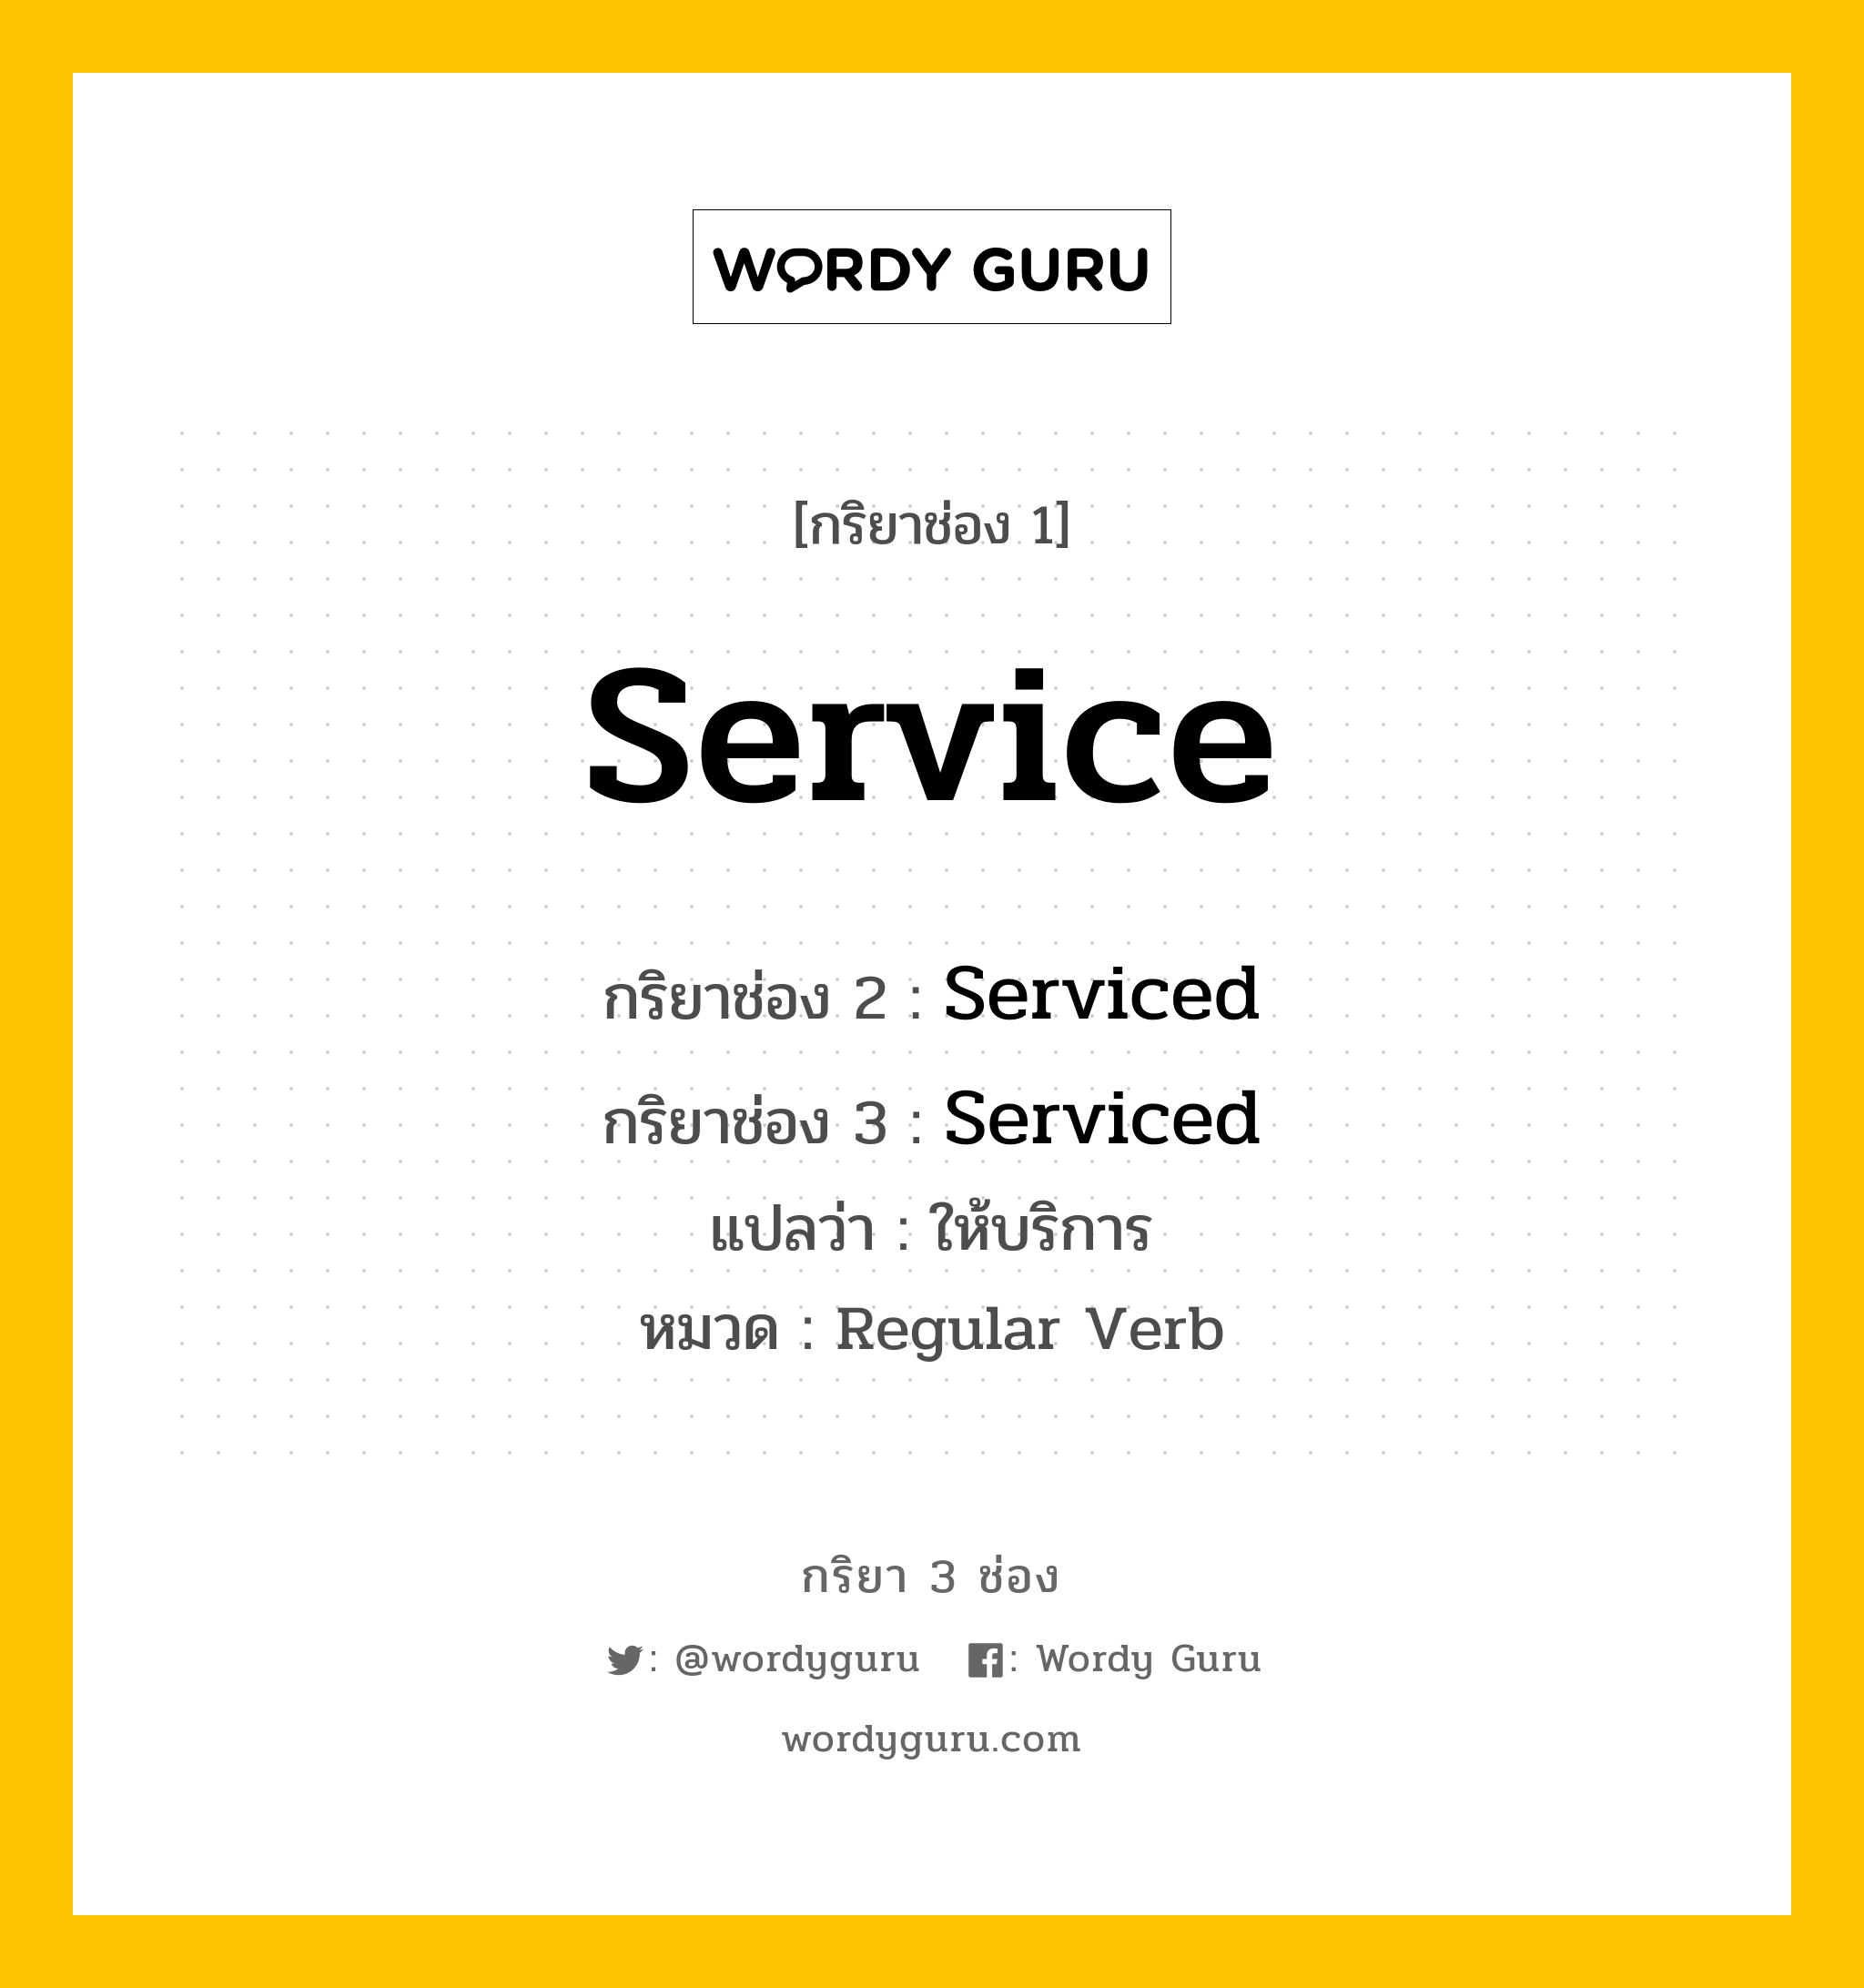 กริยา 3 ช่อง: Service ช่อง 2 Service ช่อง 3 คืออะไร, กริยาช่อง 1 Service กริยาช่อง 2 Serviced กริยาช่อง 3 Serviced แปลว่า ให้บริการ หมวด Regular Verb หมวด Regular Verb